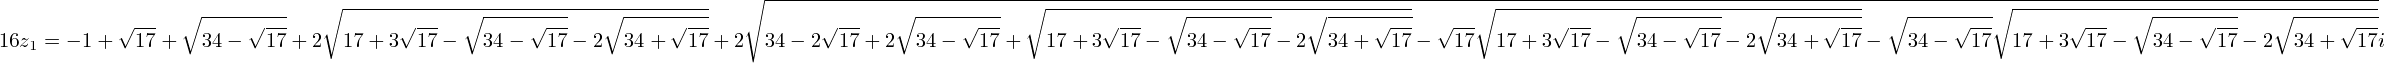 16cos(2pi/17)= -1+sqrt(17)+sqrt(34-2sqrt(17))
  +2sqrt(17+3sqrt(17)-sqrt(34-2sqrt(17))-2sqrt(34+2sqrt(17)))